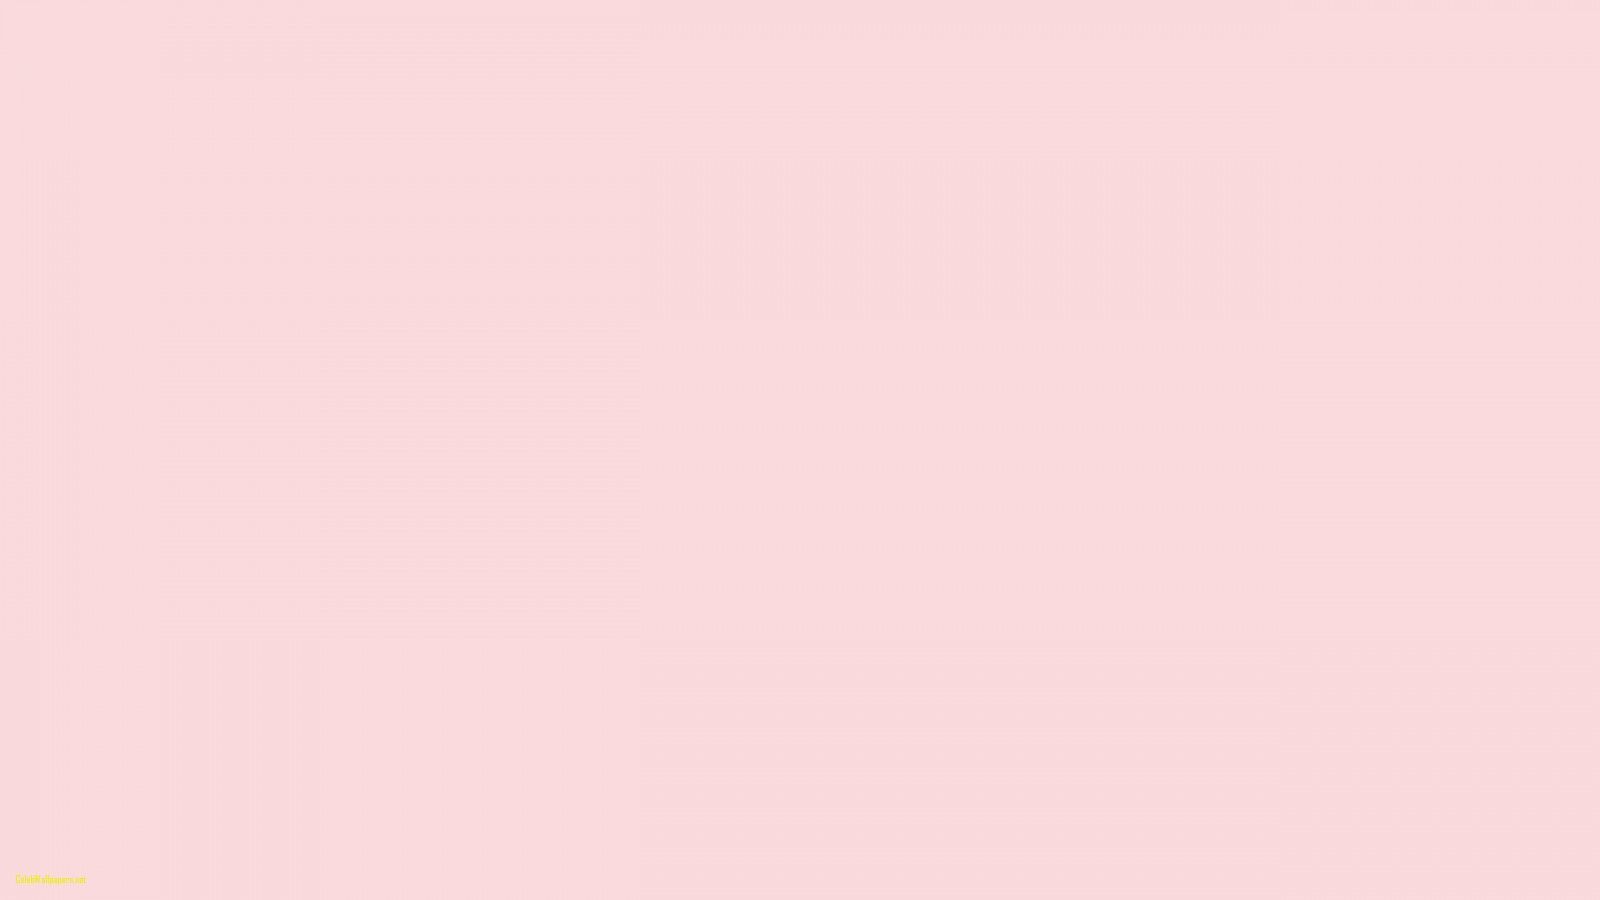 Cute Light Pink Wallpapers: Hình nền Hồng Nhạt Dễ Thương - Hãy trang trí màn hình điện thoại của bạn với hình nền hồng nhạt dễ thương. Với thiết kế đơn giản nhưng đầy quyến rũ, hình nền này sẽ giúp bạn thể hiện được phong cách của mình.